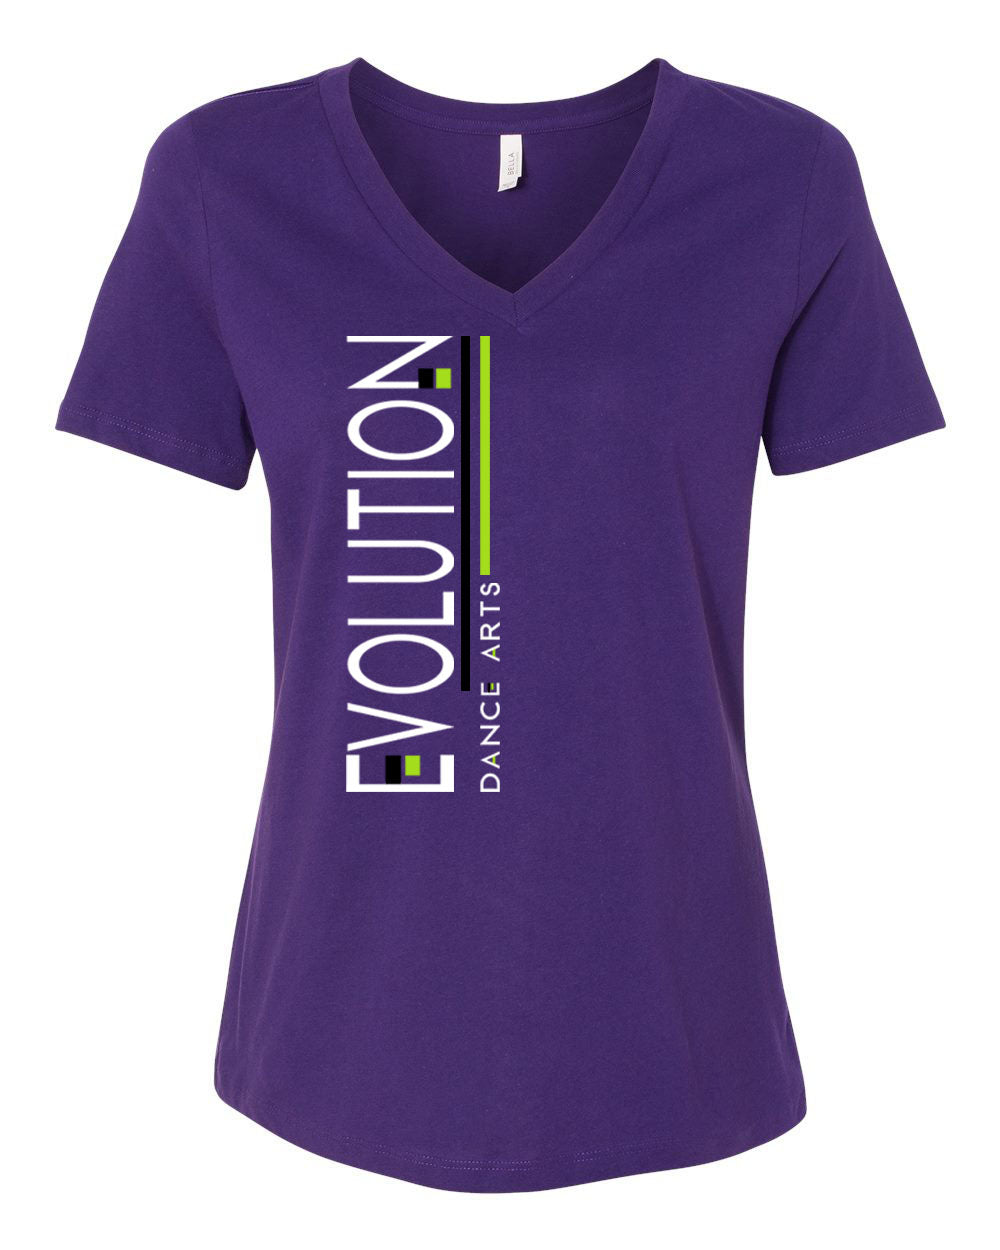 Evolution Dance Arts Design 5 V-neck T-shirt